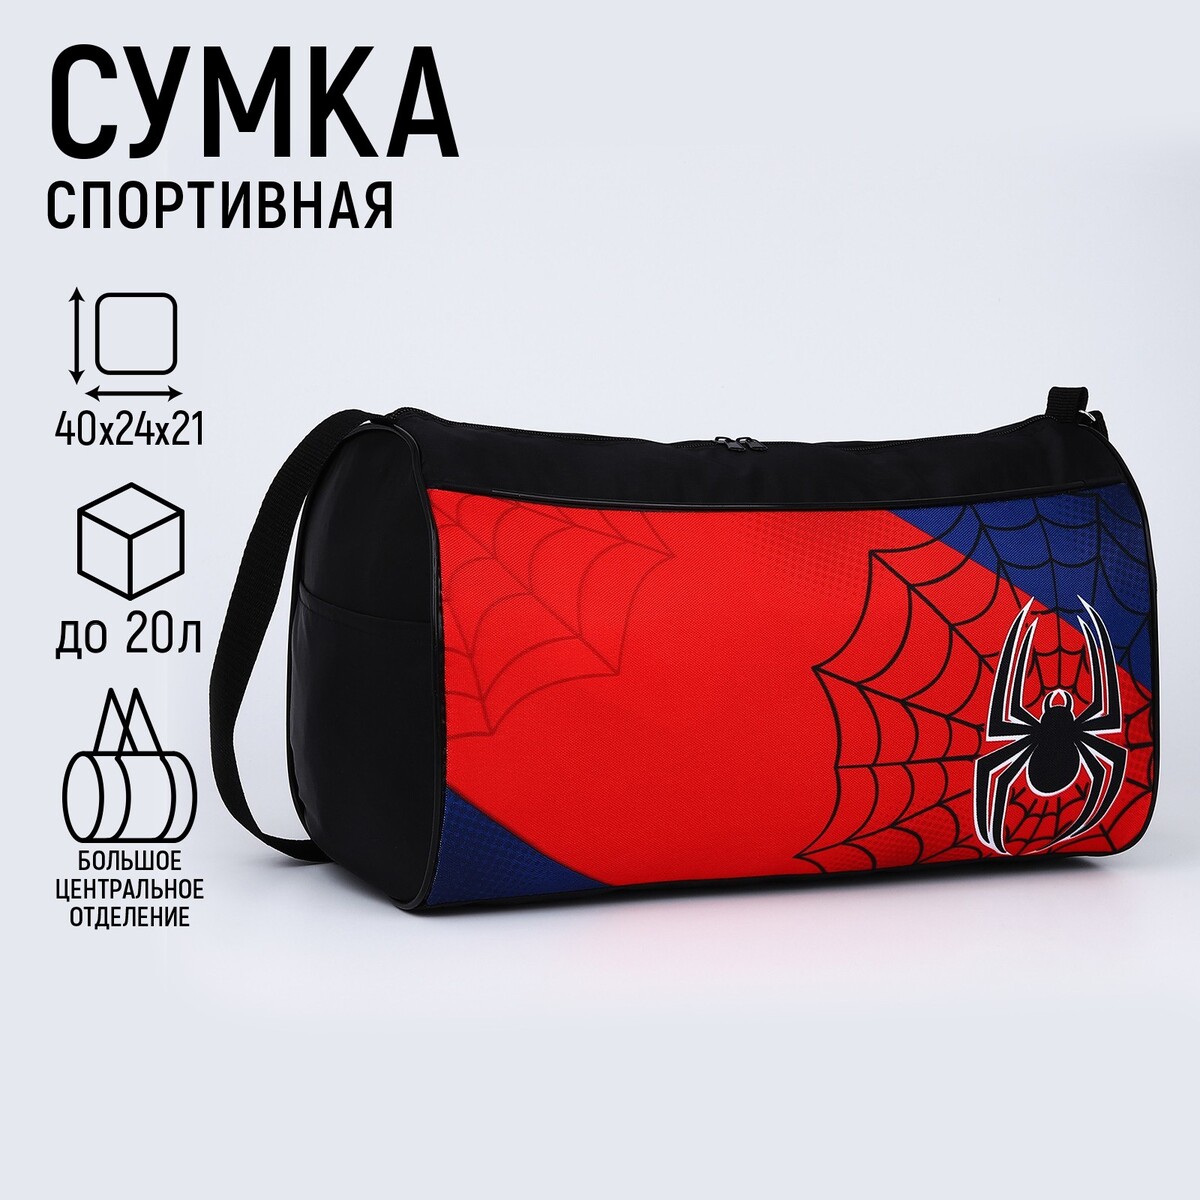 Сумка спортивная паук, 40х21х24 см, цвет черный, красный, синий паук блестящий средний на подложке